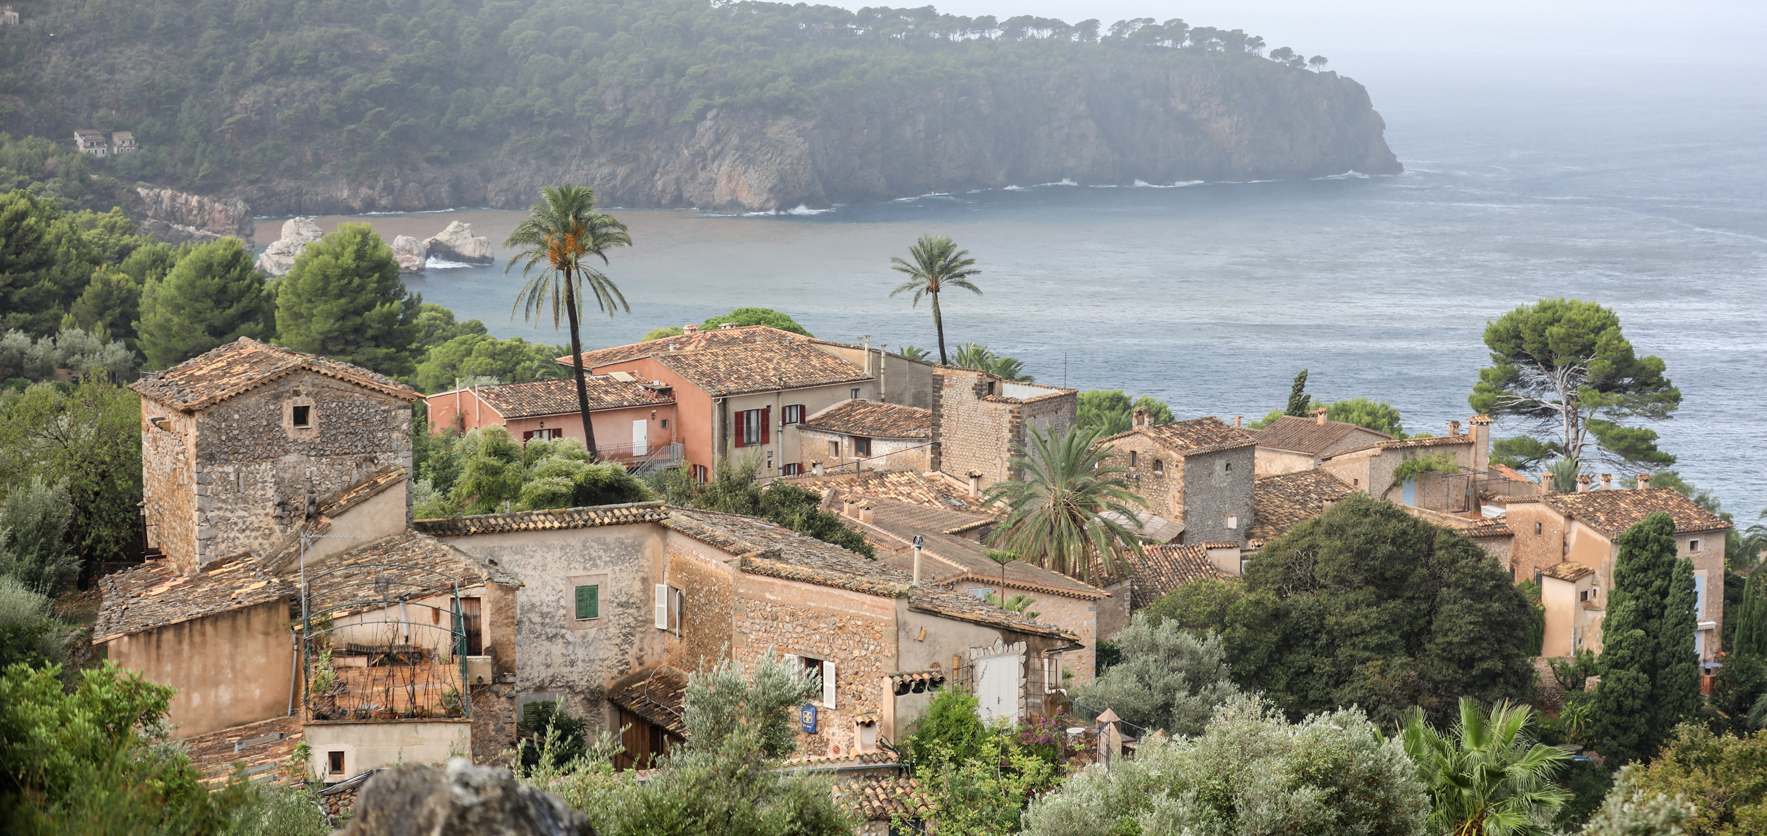 A coastal village in Majorca